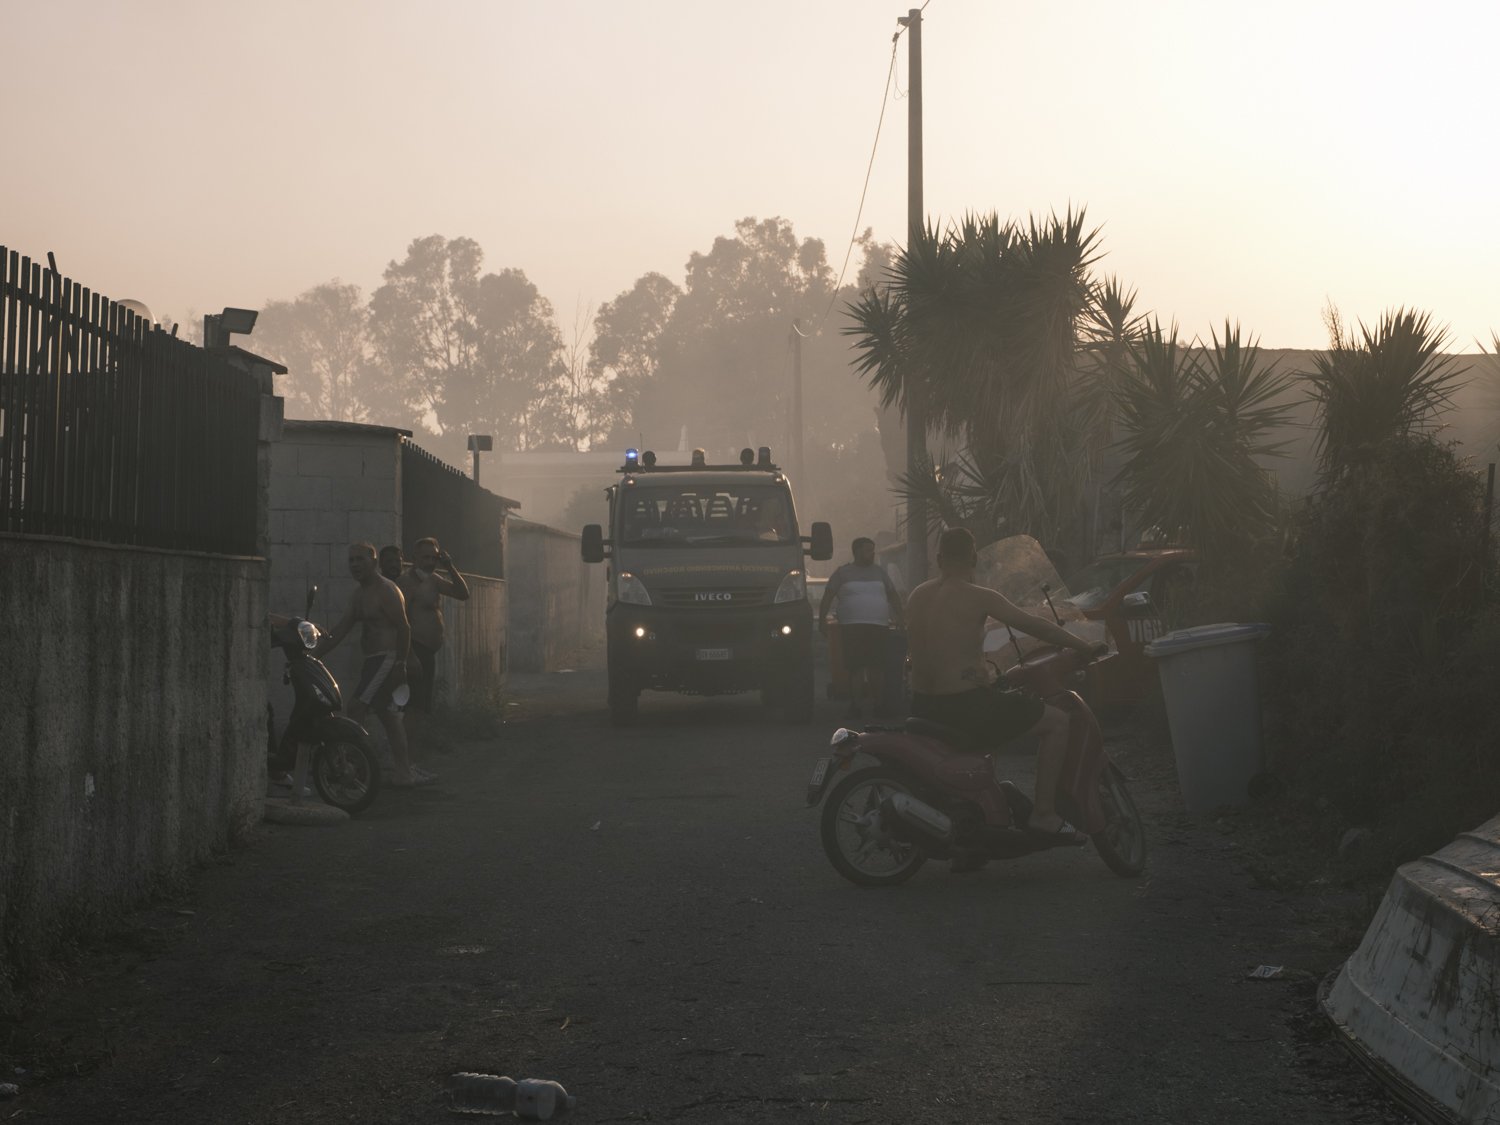  Gli incendi nell’area protetta dell’Oasi del simeto, hanno colpito anche centri abitati, come il VillaggioAzzurro. Qui alcuni residenti dopo l’intervento della guuardia forestale. 